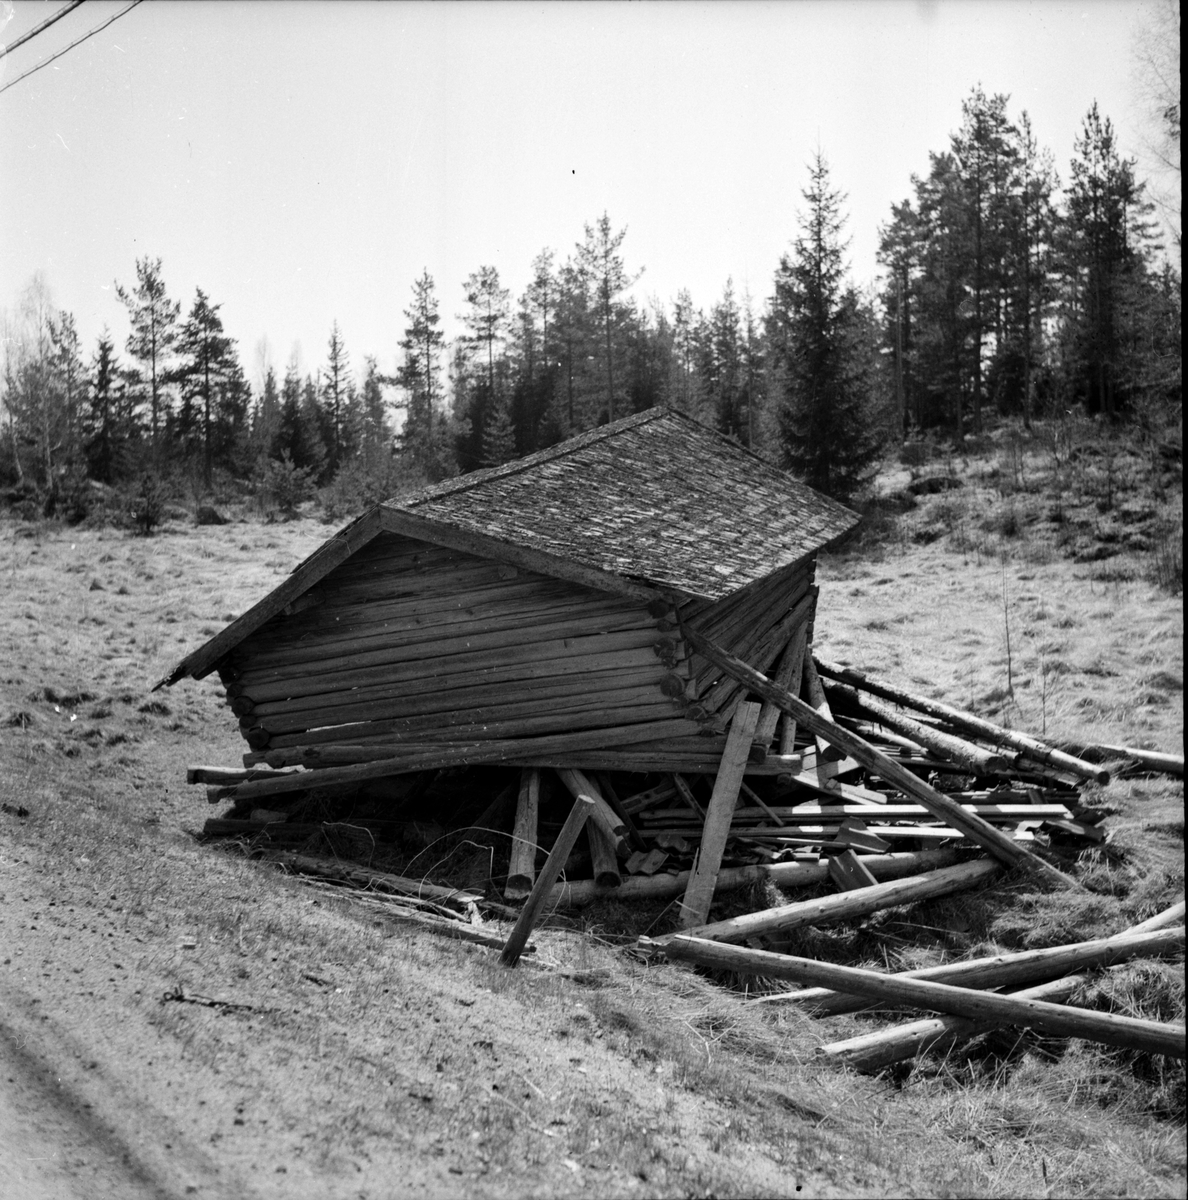 Gamla kåkar efter vägarna,
22 April 1965